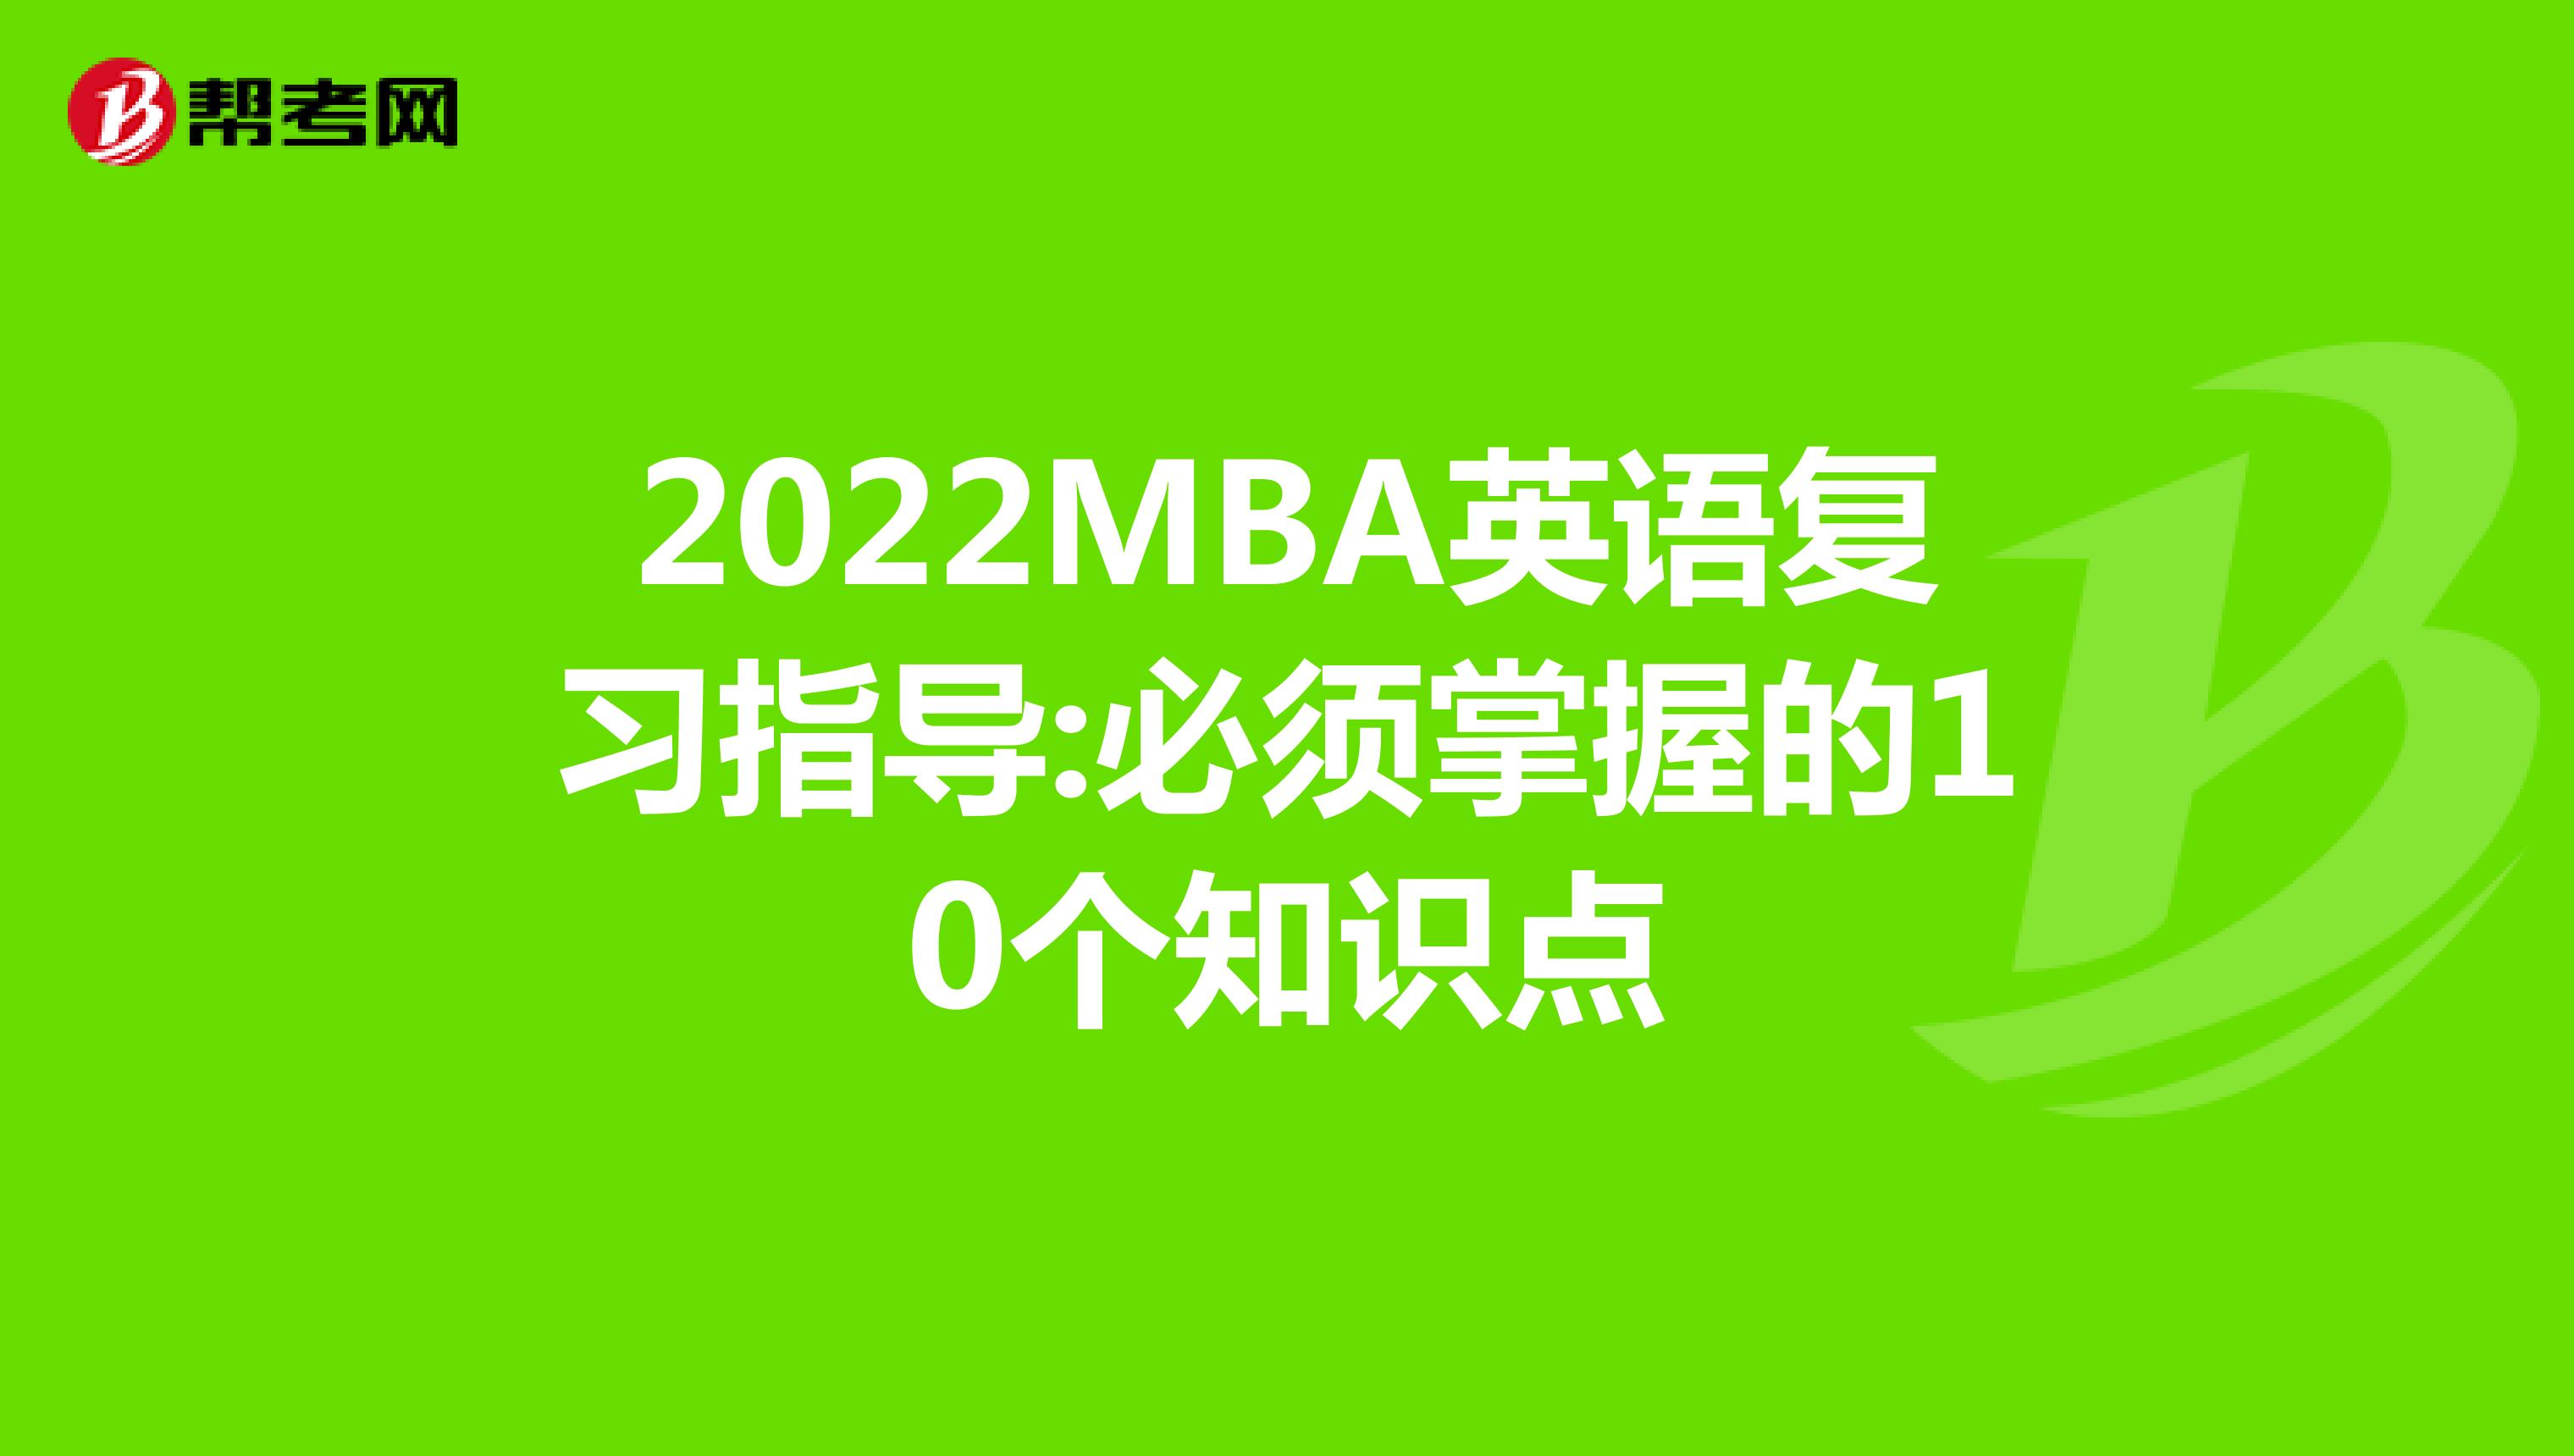 2022MBA英语复习指导:必须掌握的10个知识点